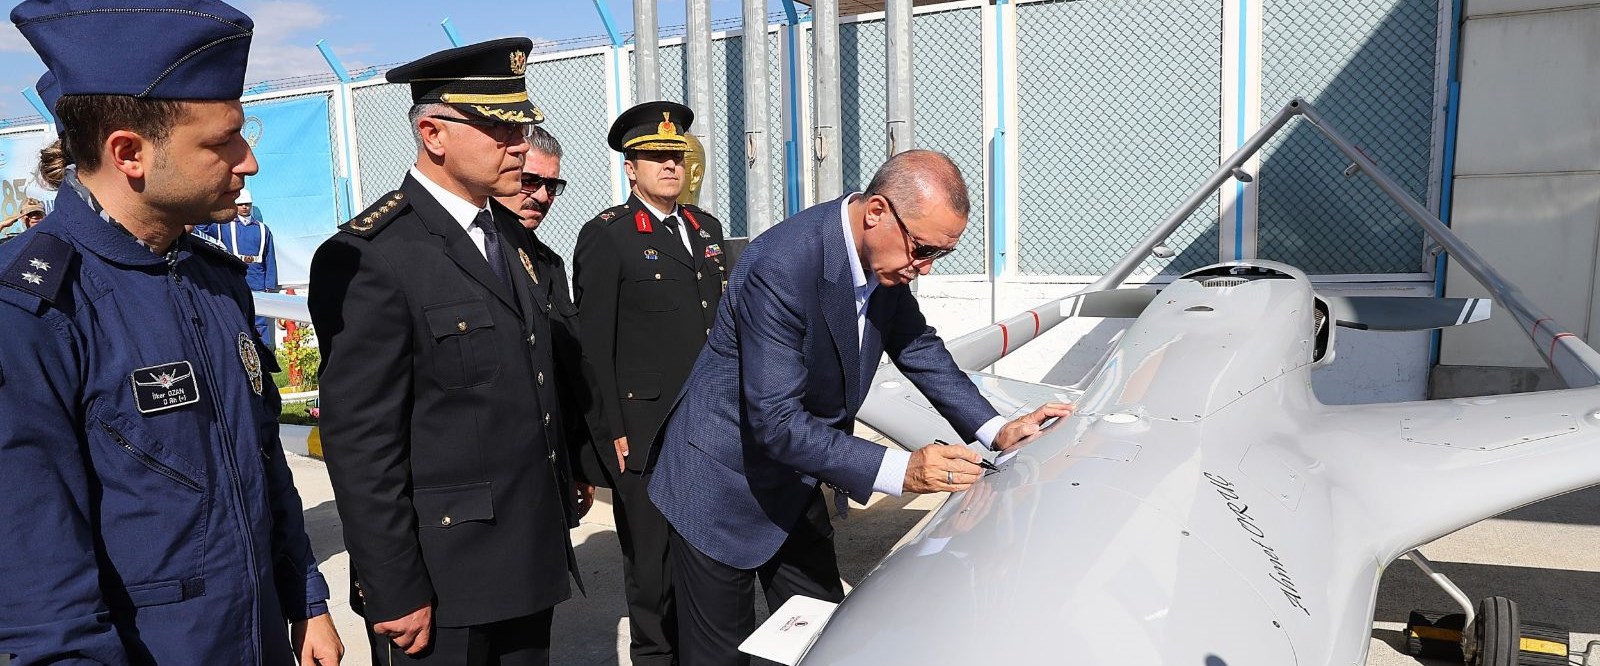 Cumhurbaşkanı Erdoğan, insansız hava aracına tarih ve imza attı